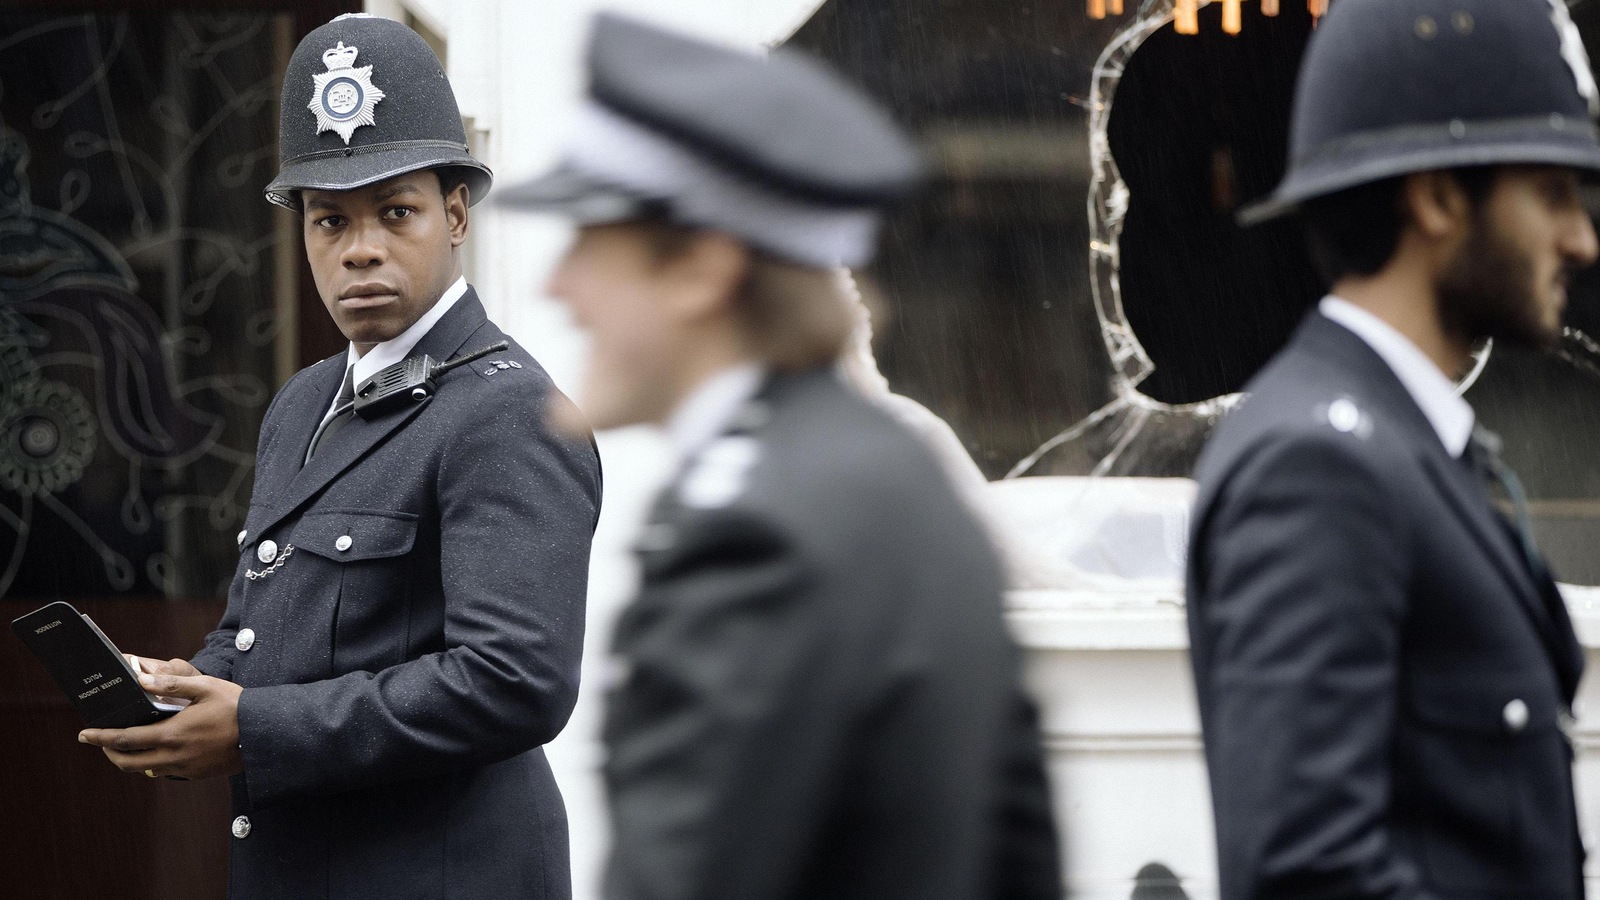 Un jeune homme (John Boyega) en tenue de policier britannique, dans la rue.